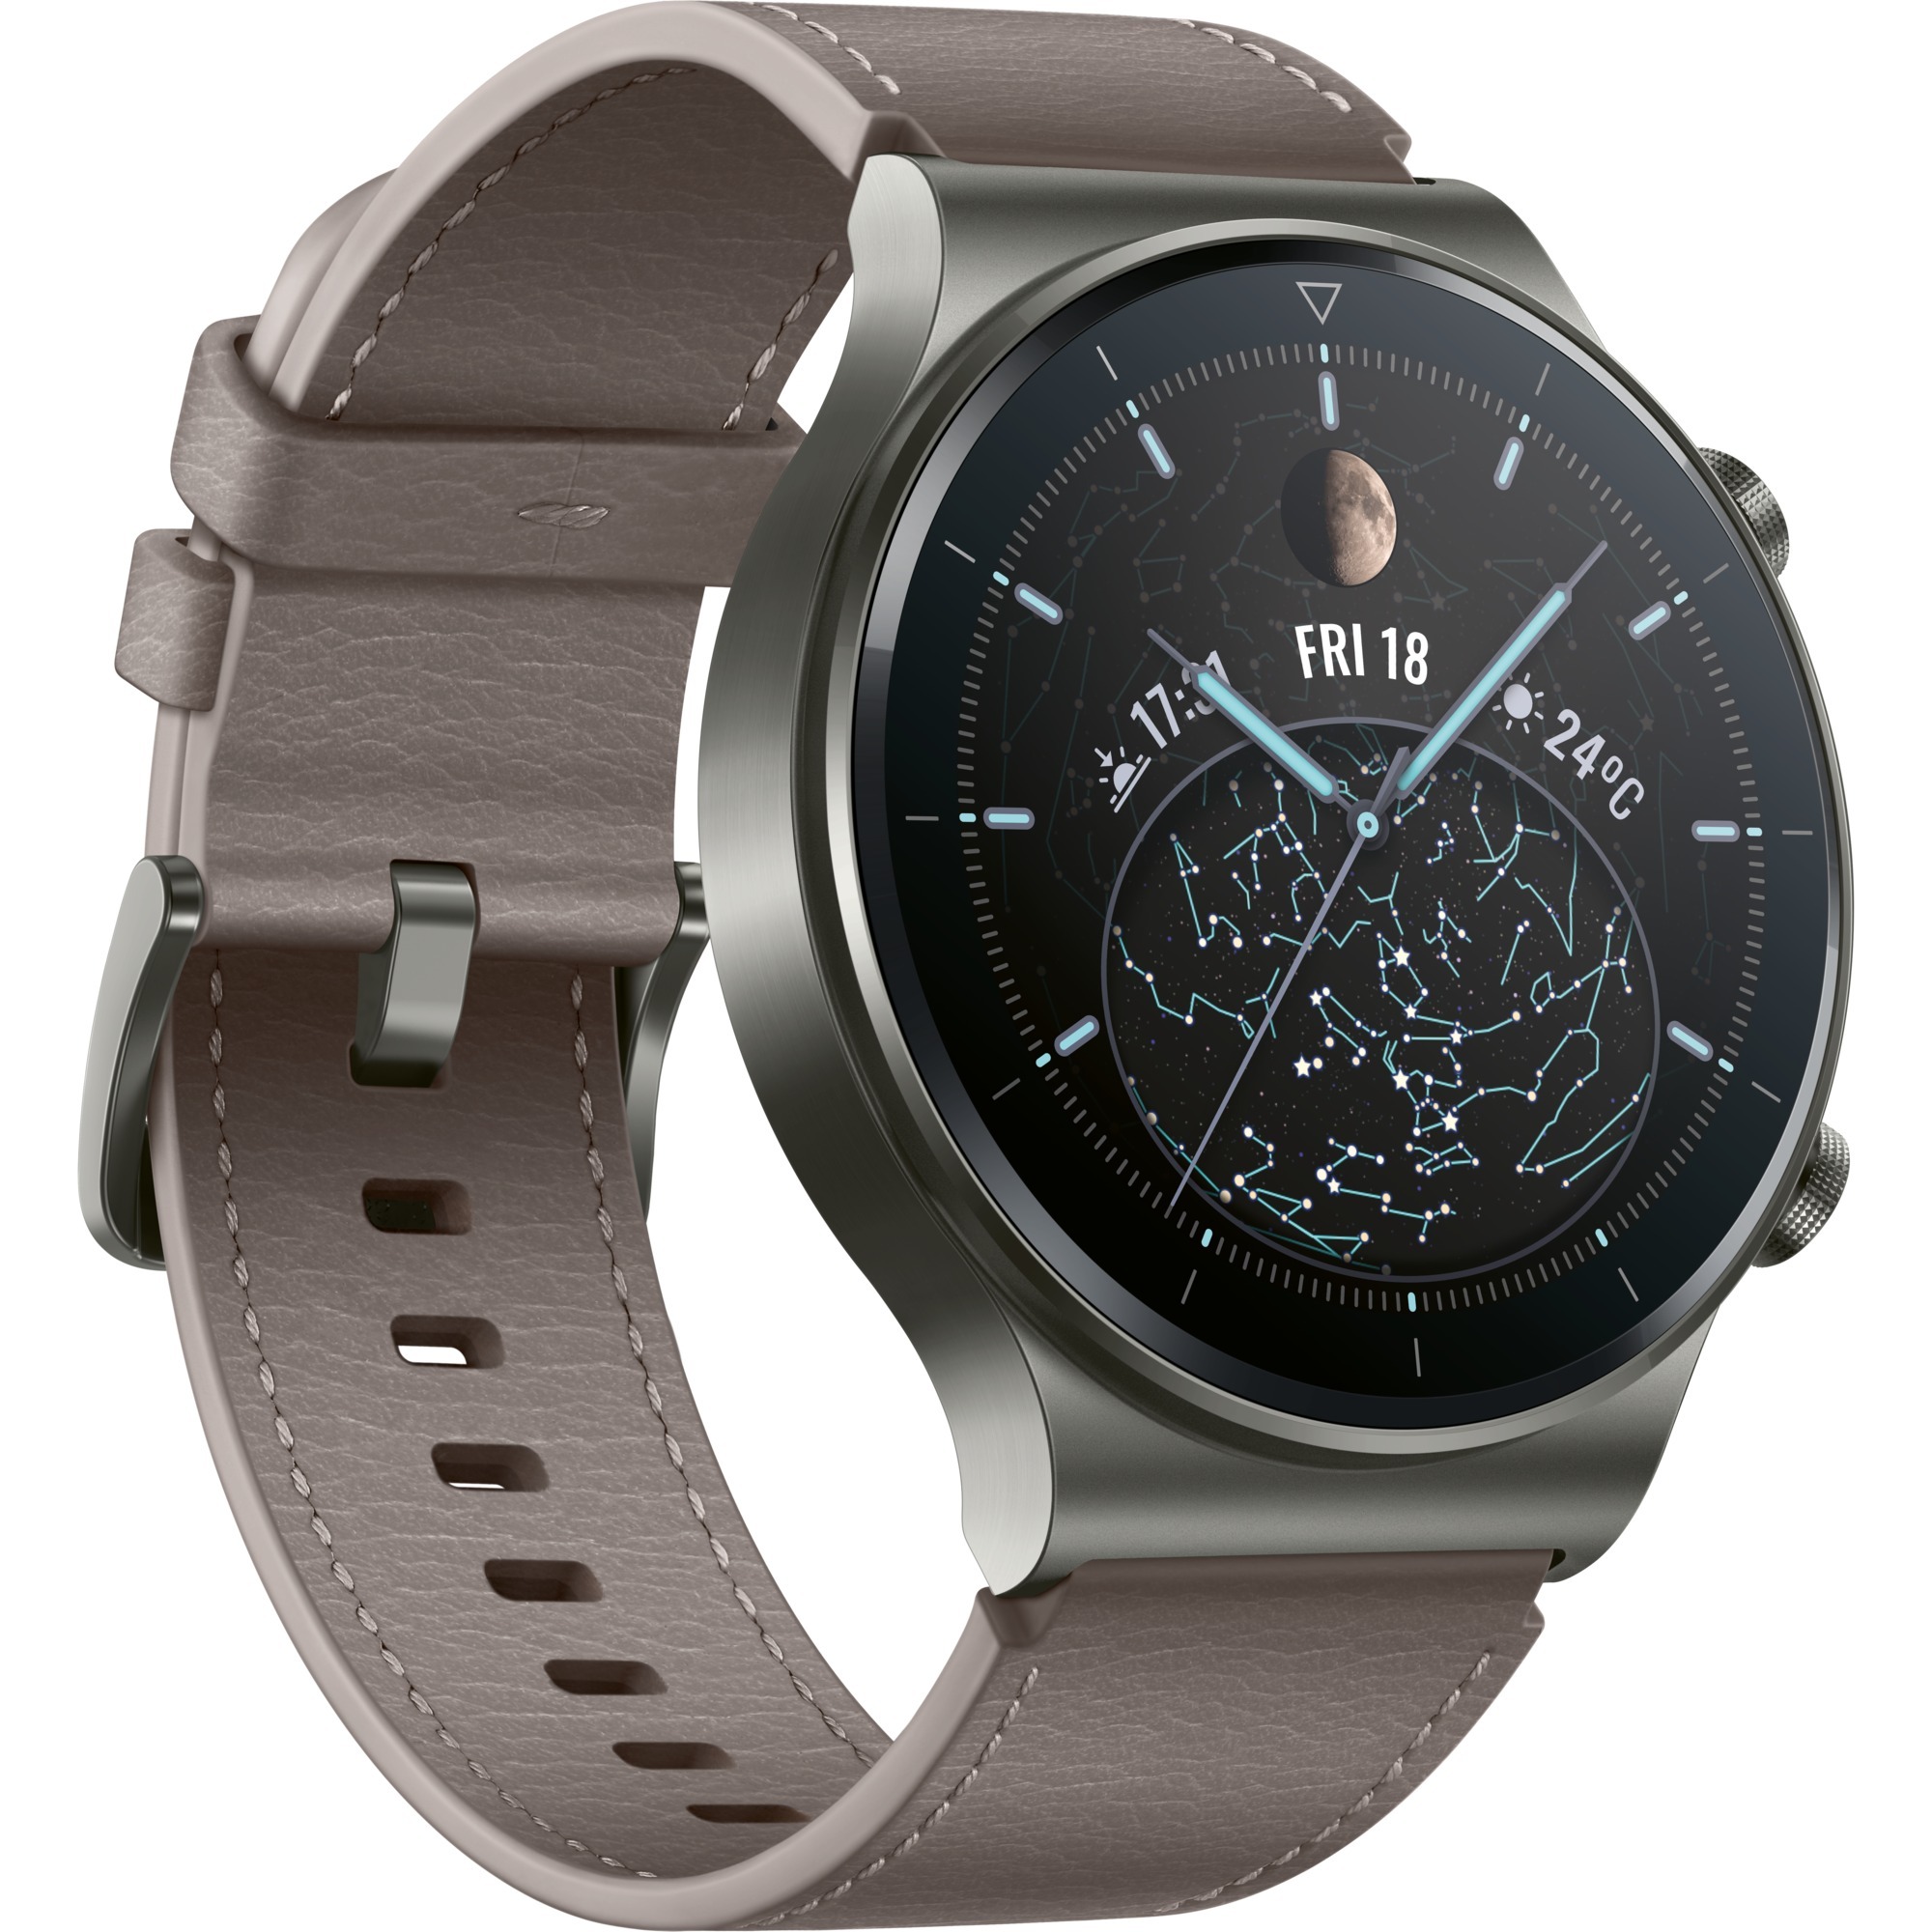 Image of Alternate - Watch GT2 Pro Classic, Smartwatch online einkaufen bei Alternate